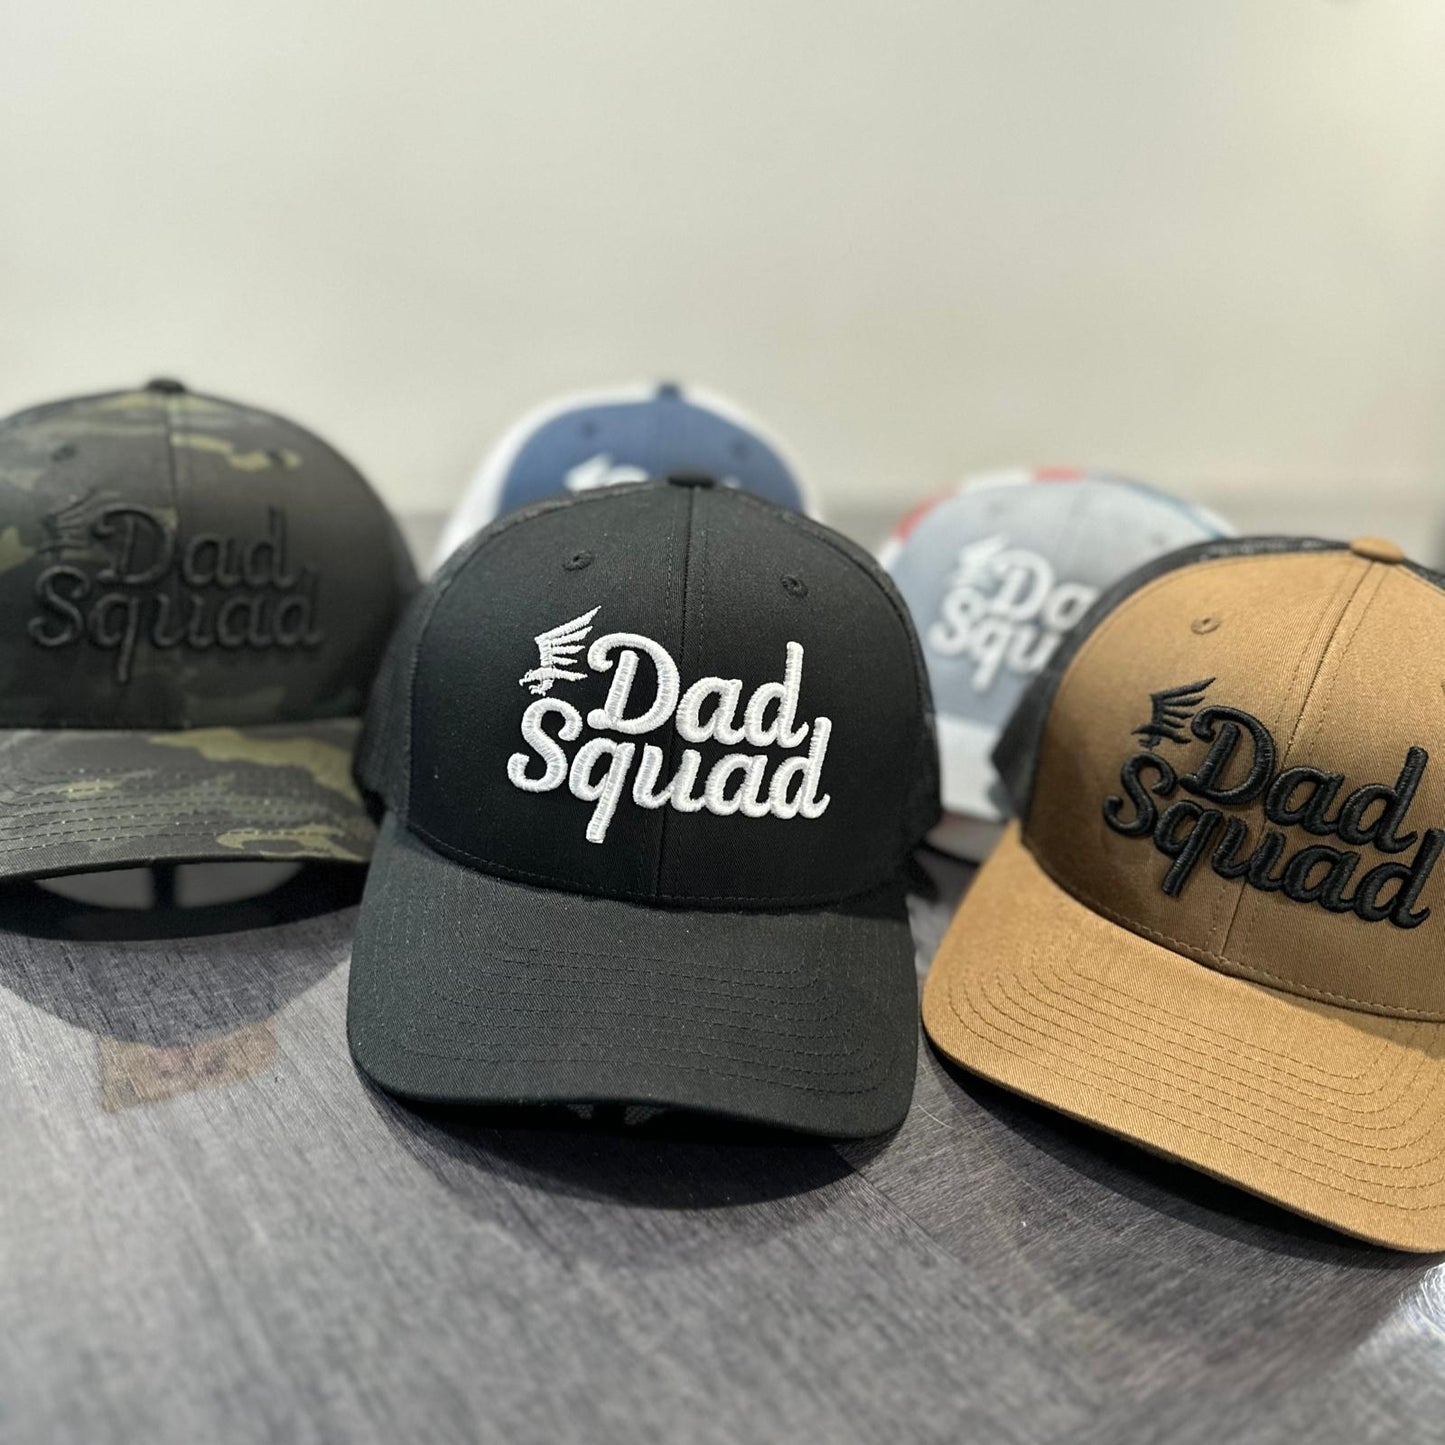 Dad Squad Mid Rise Trucker Cap - Black